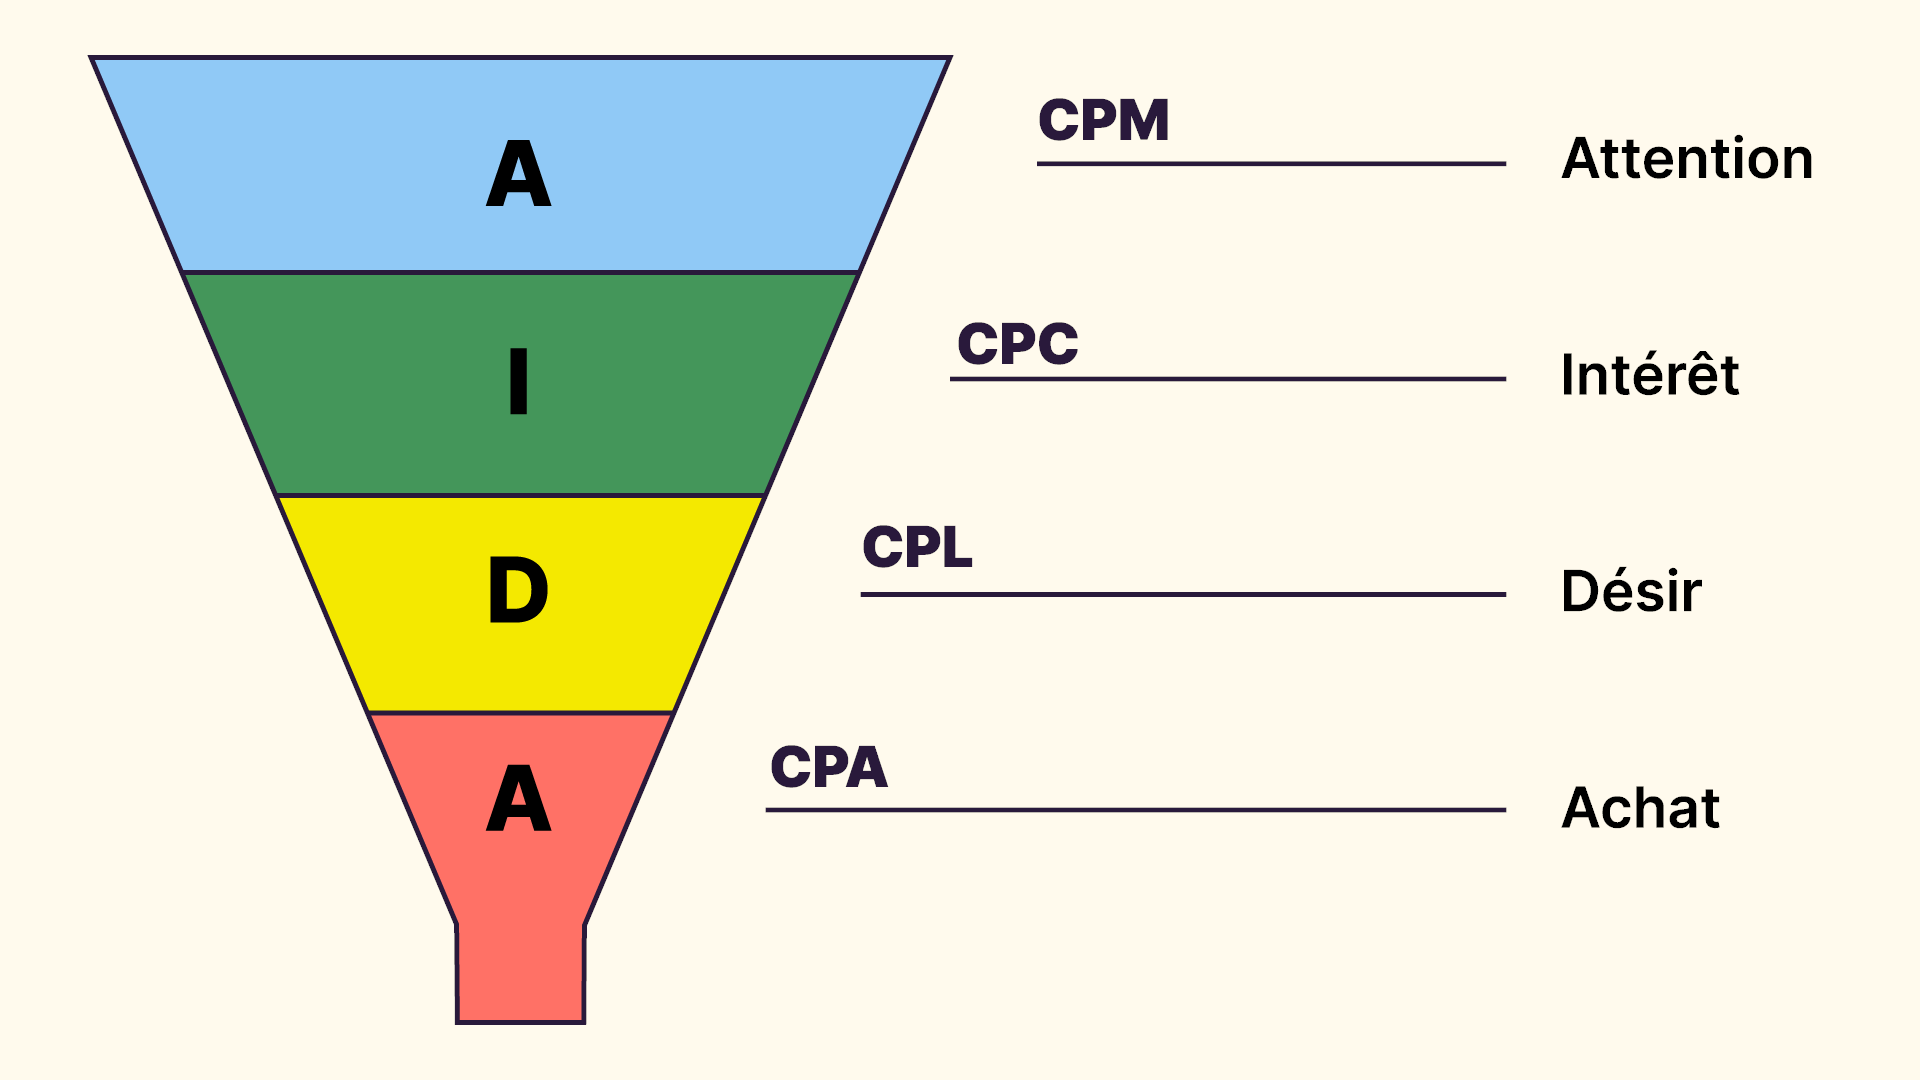 Comparatif entre AIDA et les calculs de performance : Achat - Ventes - CPA. Désir - Leads - CPL. Intérêt - Clics - CPC. Attention - Impression - CPM